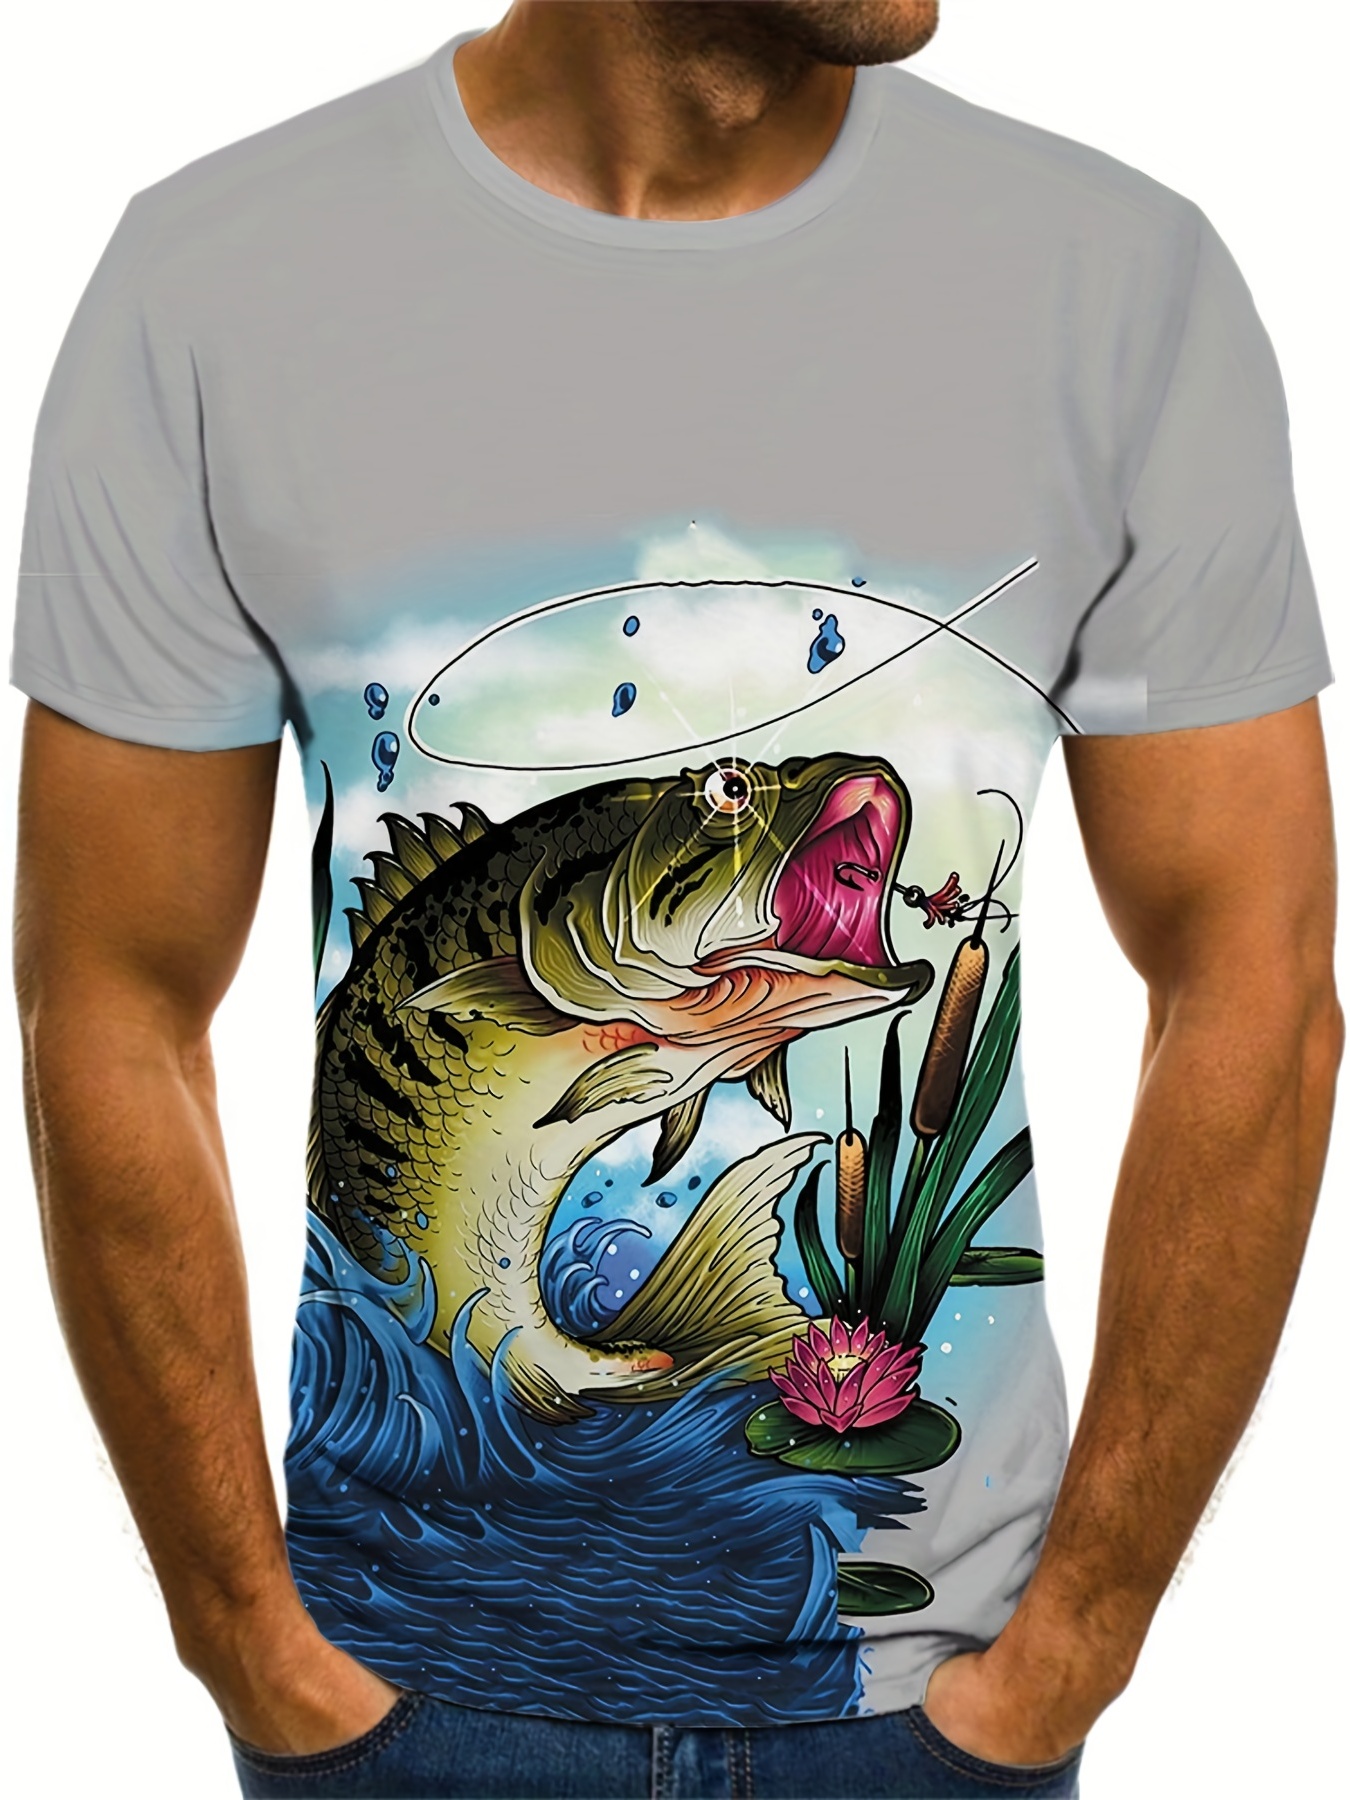 Funny Fishing Shirts For Men Meme WTF! Where's The Fish? T-Shirt